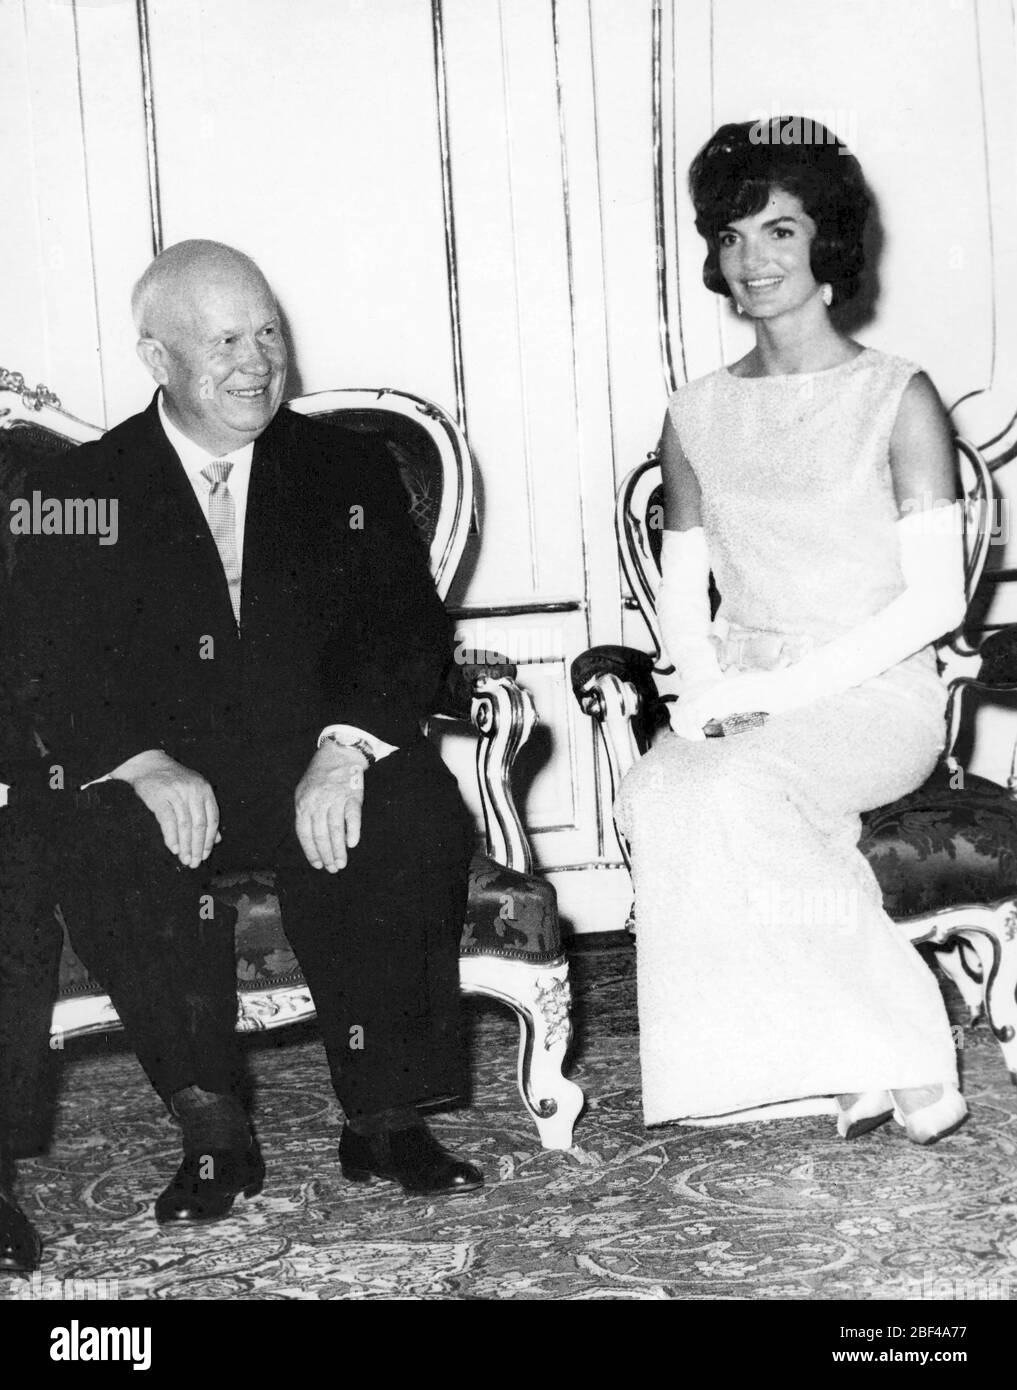 19. Juni 1967 - Waterford, Irland - First Lady JACQUELINE KENNEDY (7/28/1929-5/19/1994), Witwe von Präsident John F. Kennedy, die auf einem Pferd in der irischen Landschaft im Urlaub reitet. Stockfoto